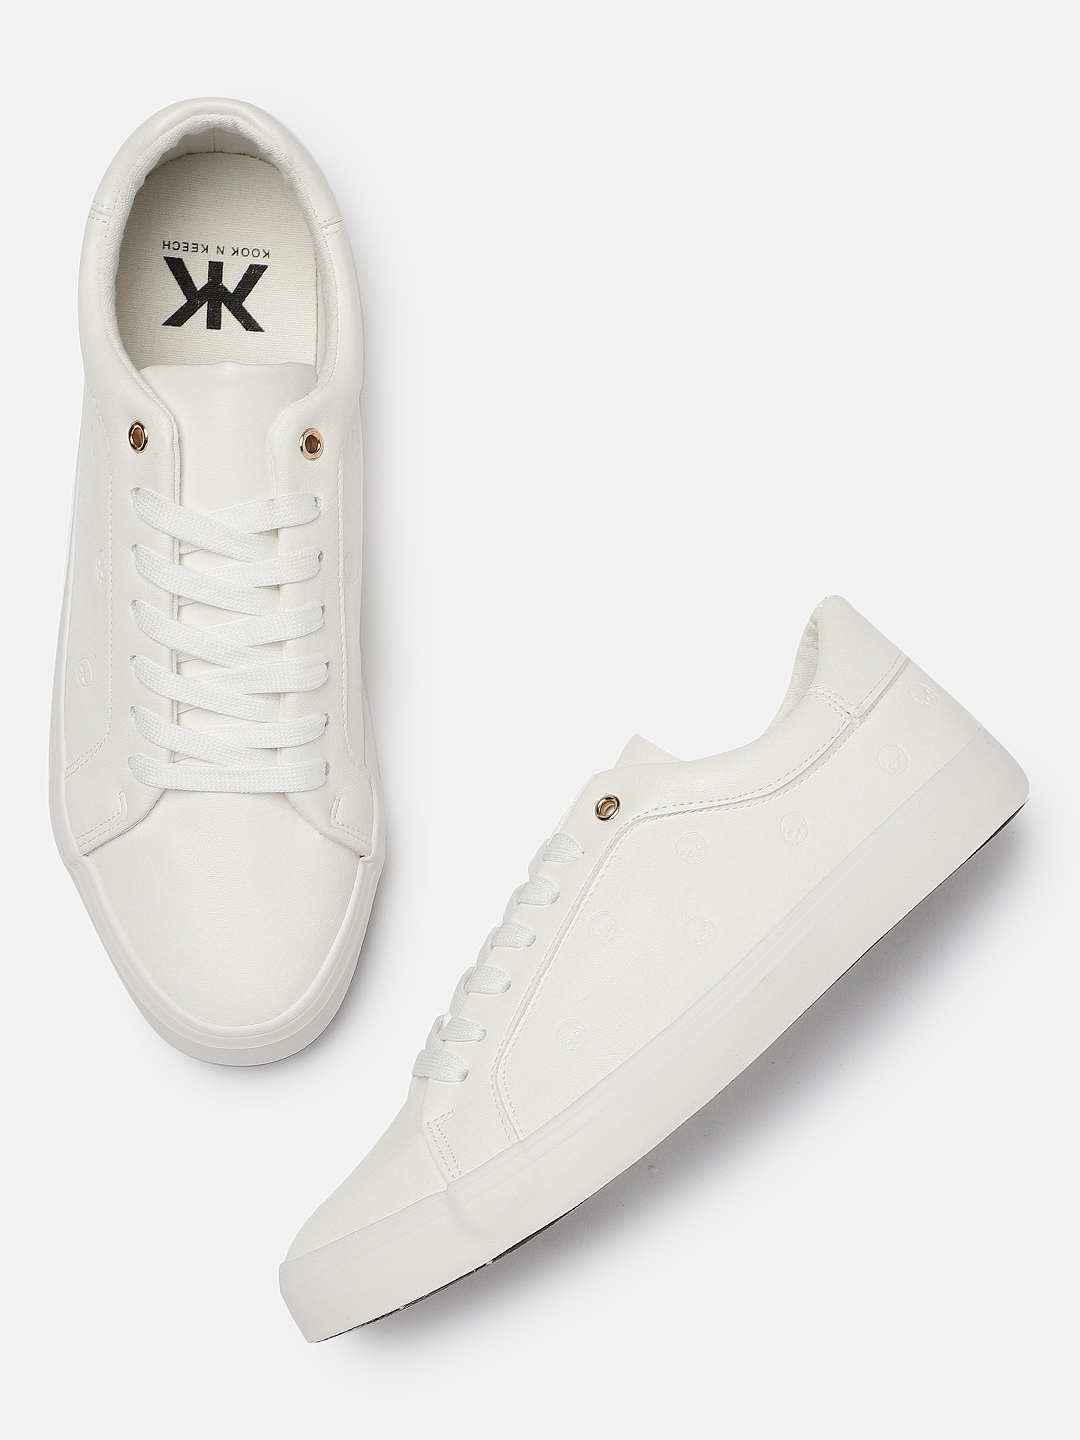 Buy Kook N Keech Men White Sneakers 